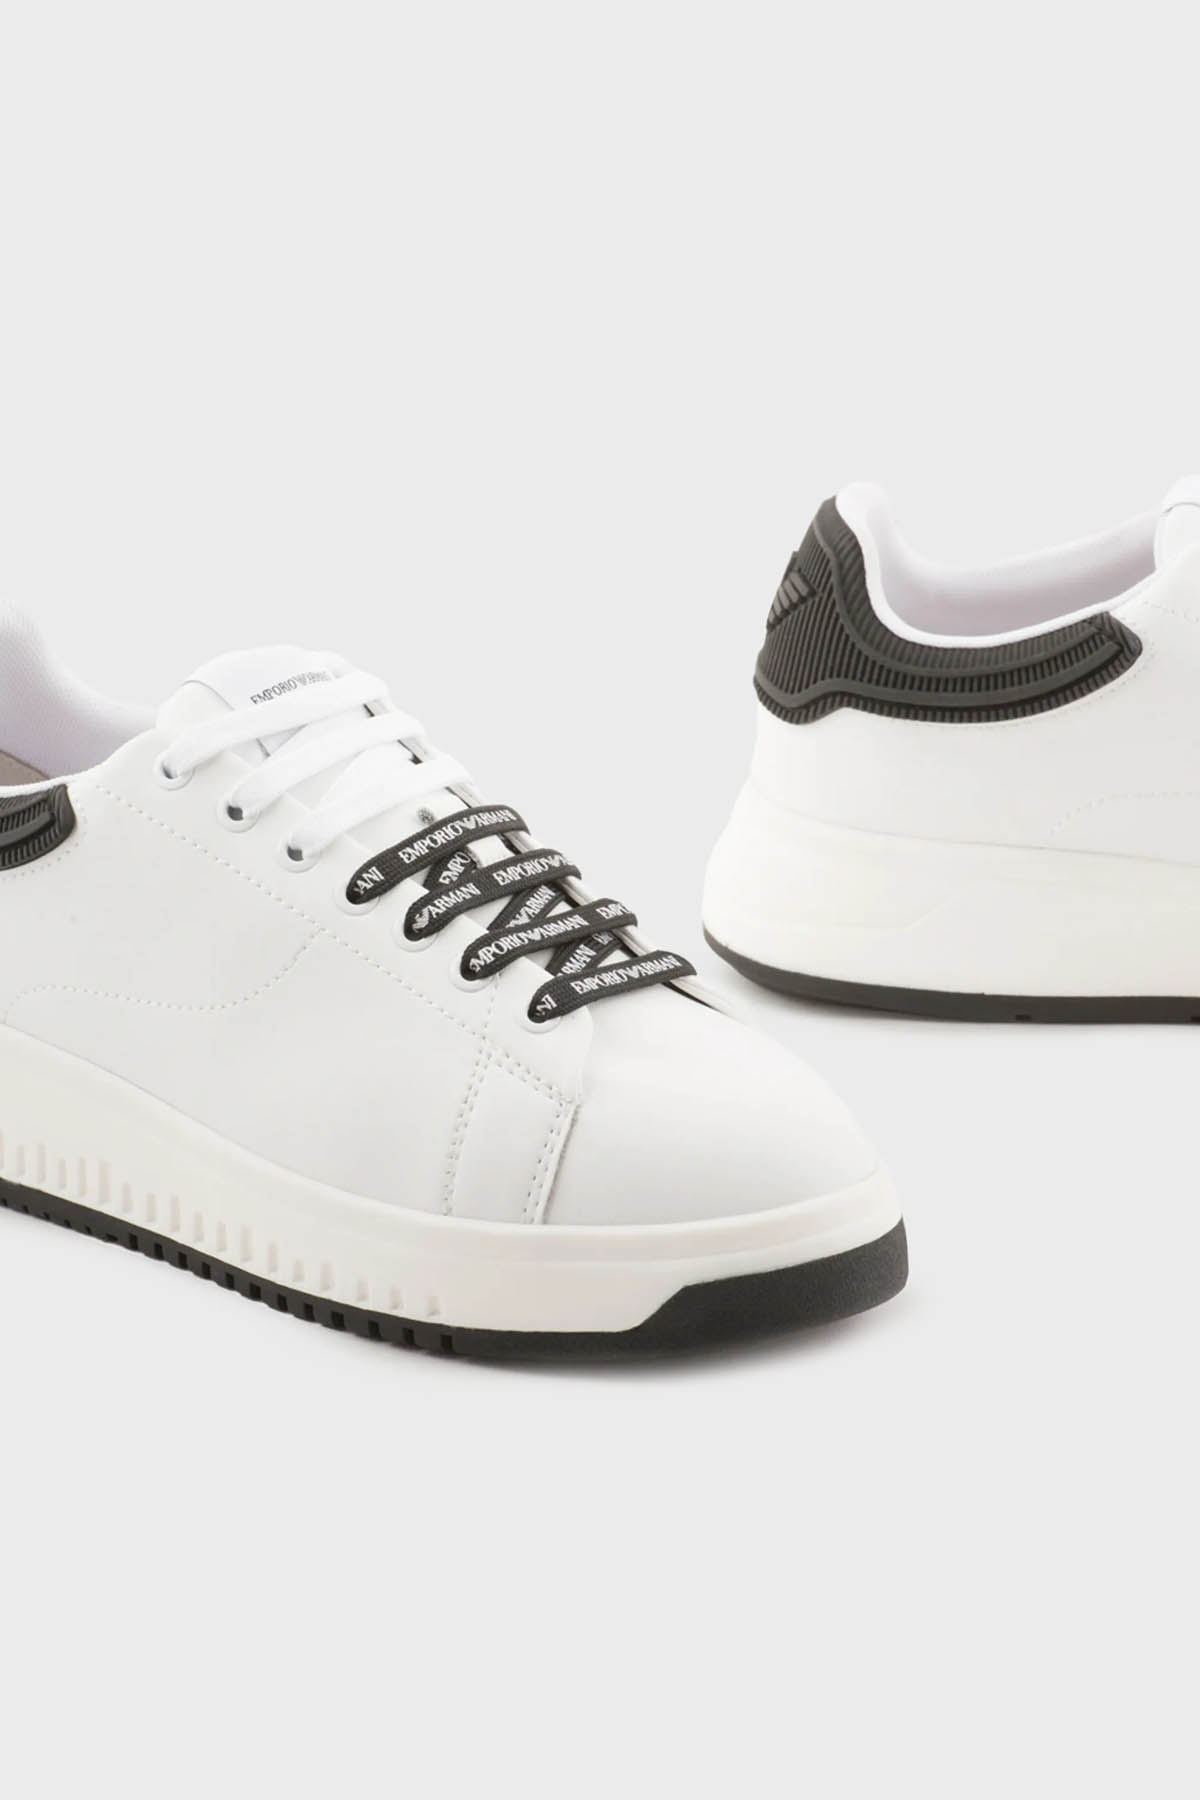 Emporio Armani Logolu Deri Sneaker Bayan Ayakkabı X3X024 XN825 D611 BEYAZ